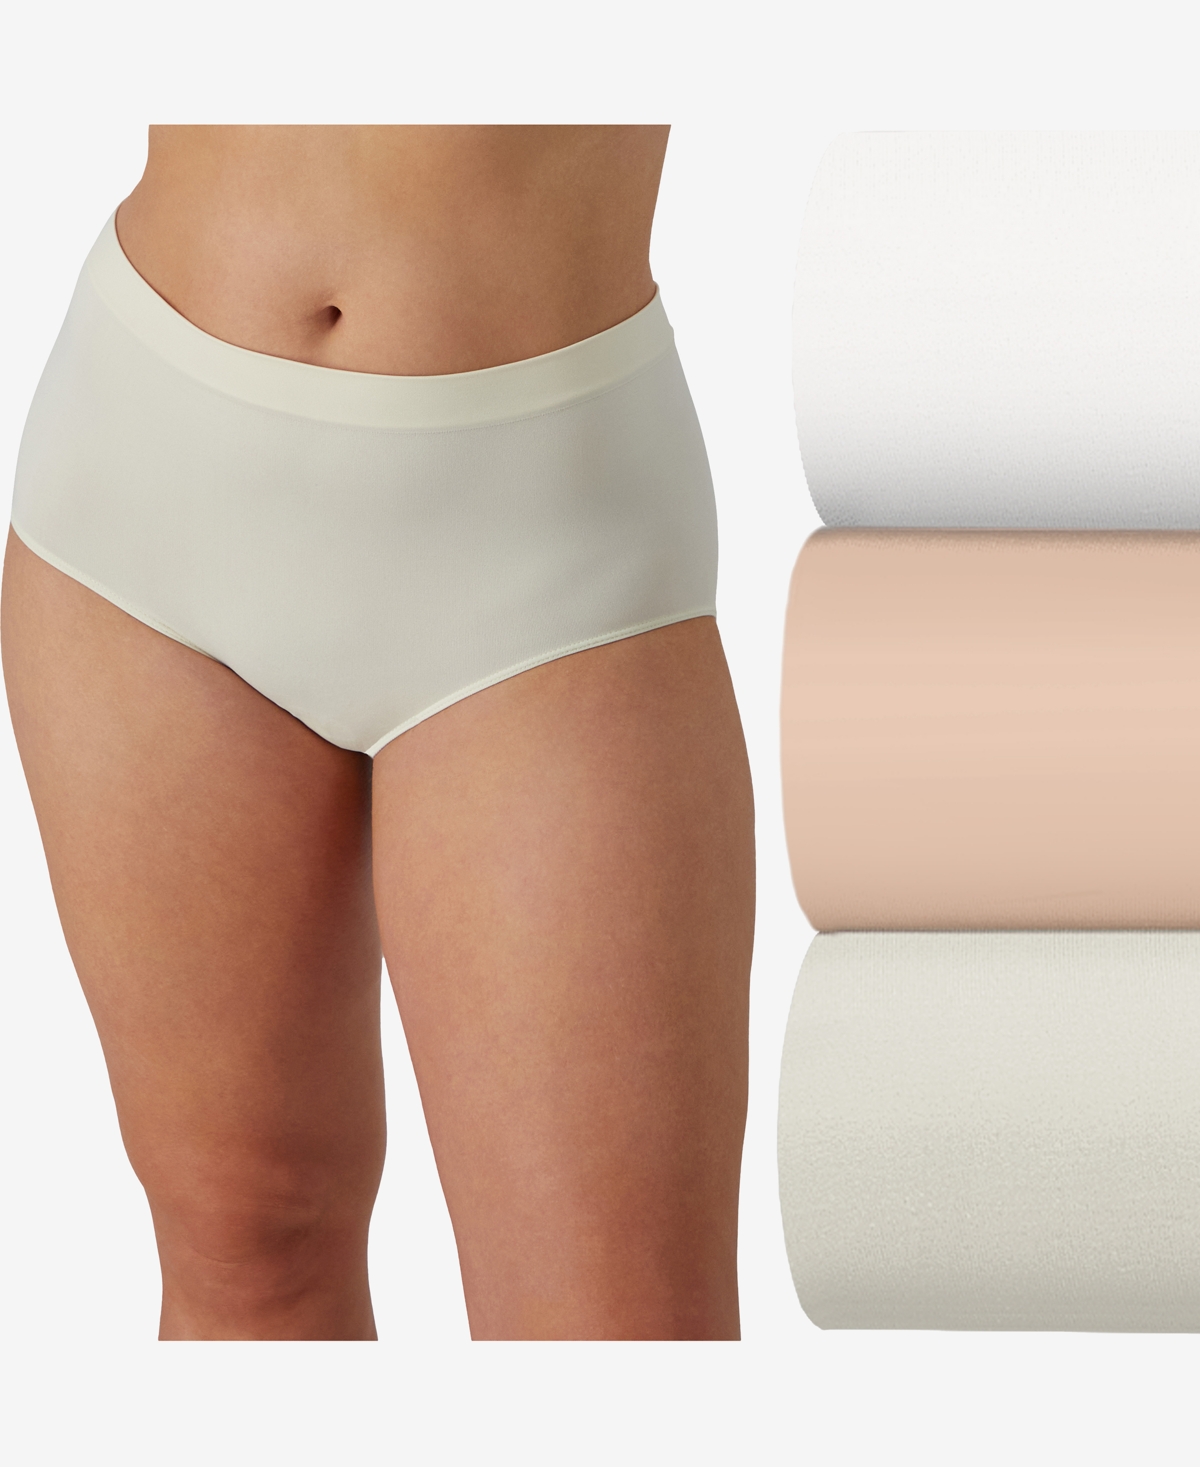 Bali Women's 3-pk. Comfort Revolution Microfiber Damask Brief Underwear Ak88 In White,nude,beige